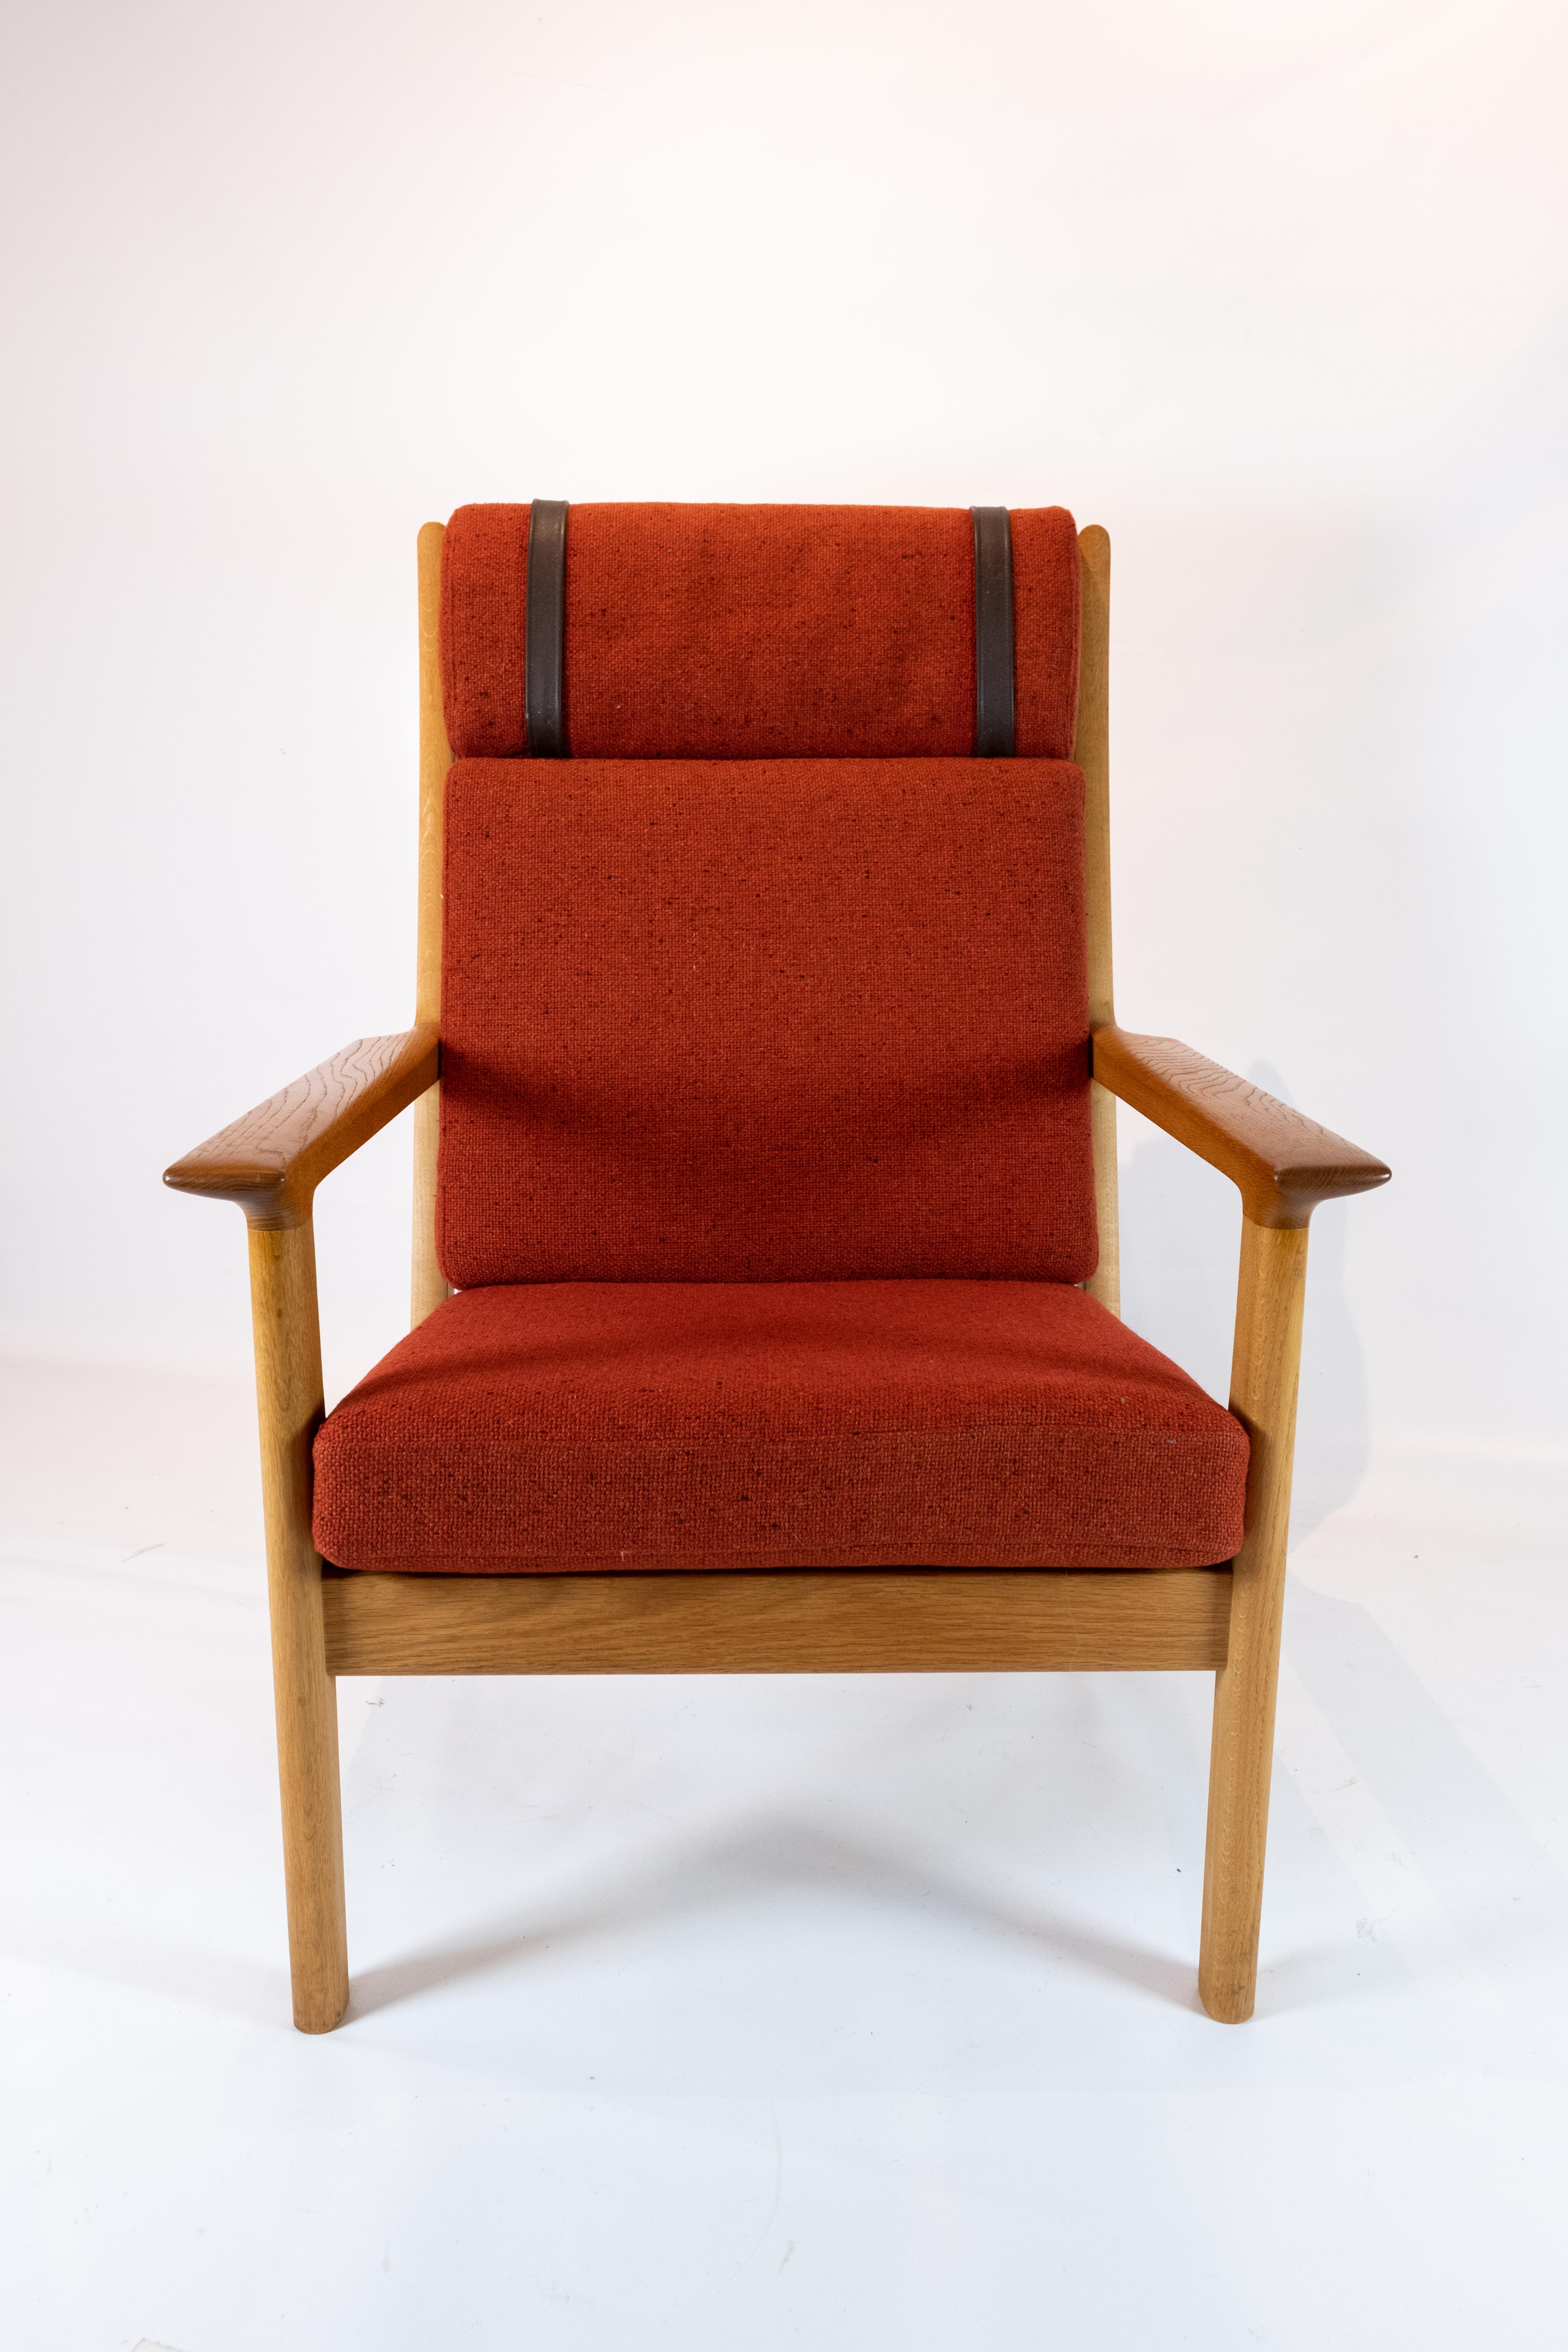 Ce grand fauteuil, conçu par le célèbre Hans J. Wegner et méticuleusement fabriqué par GETAMA dans les années 1960, incarne l'élégance et le confort du design scandinave. Fabrice en chêne massif et tapissé d'un tissu de laine rouge vibrant, il